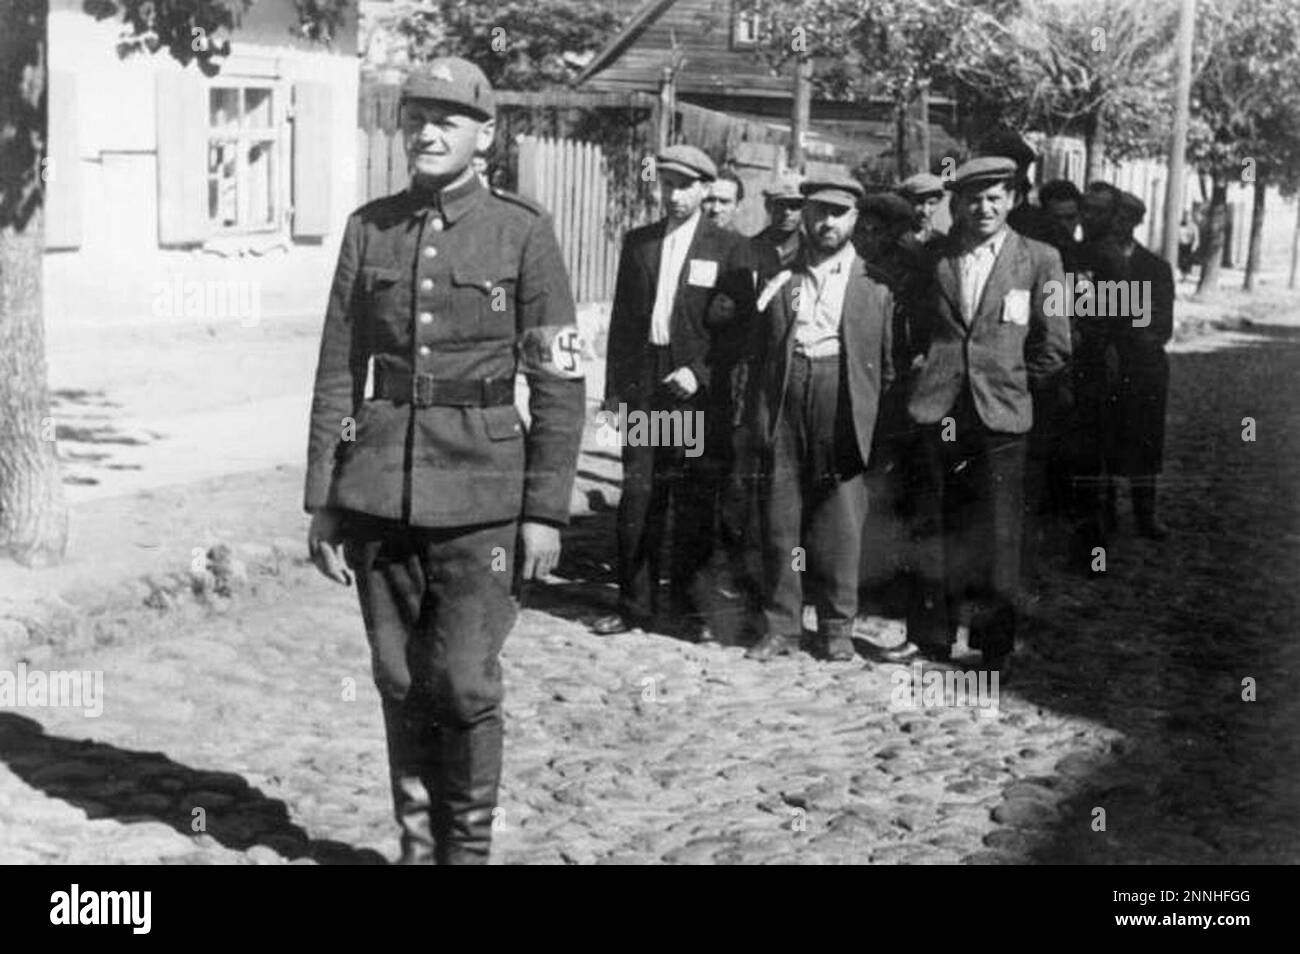 Poliziotto lituano con prigionieri ebrei, Vilnius, 1941. Con Bundesarchiv, Bild 183-B10160 / CC-BY-SA 3,0, CC BY-SA 3,0 de, https://commons.wikimedia.org/w/index.php?curid=5360672 Foto Stock